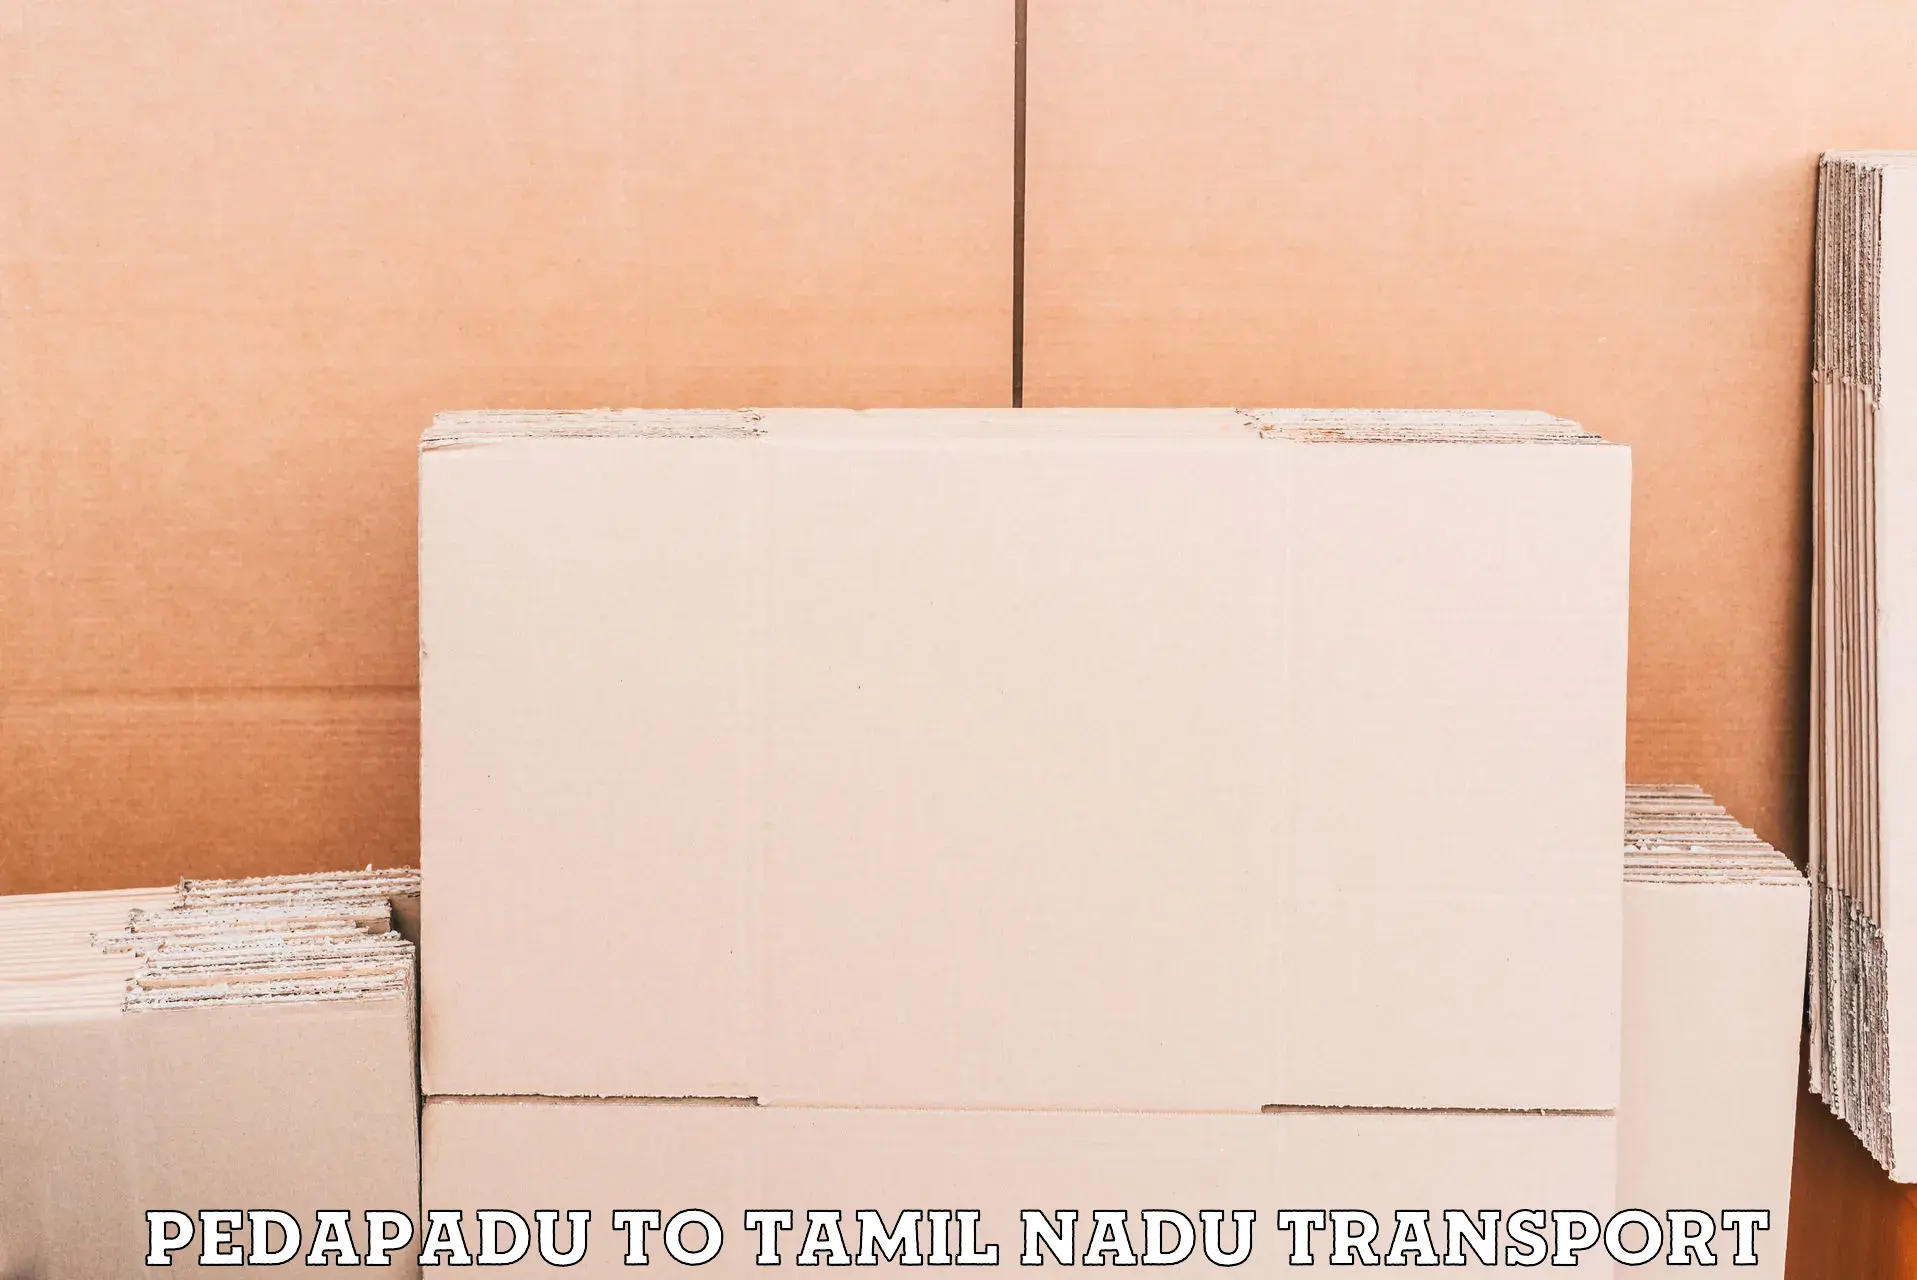 Furniture transport service Pedapadu to Tamil Nadu